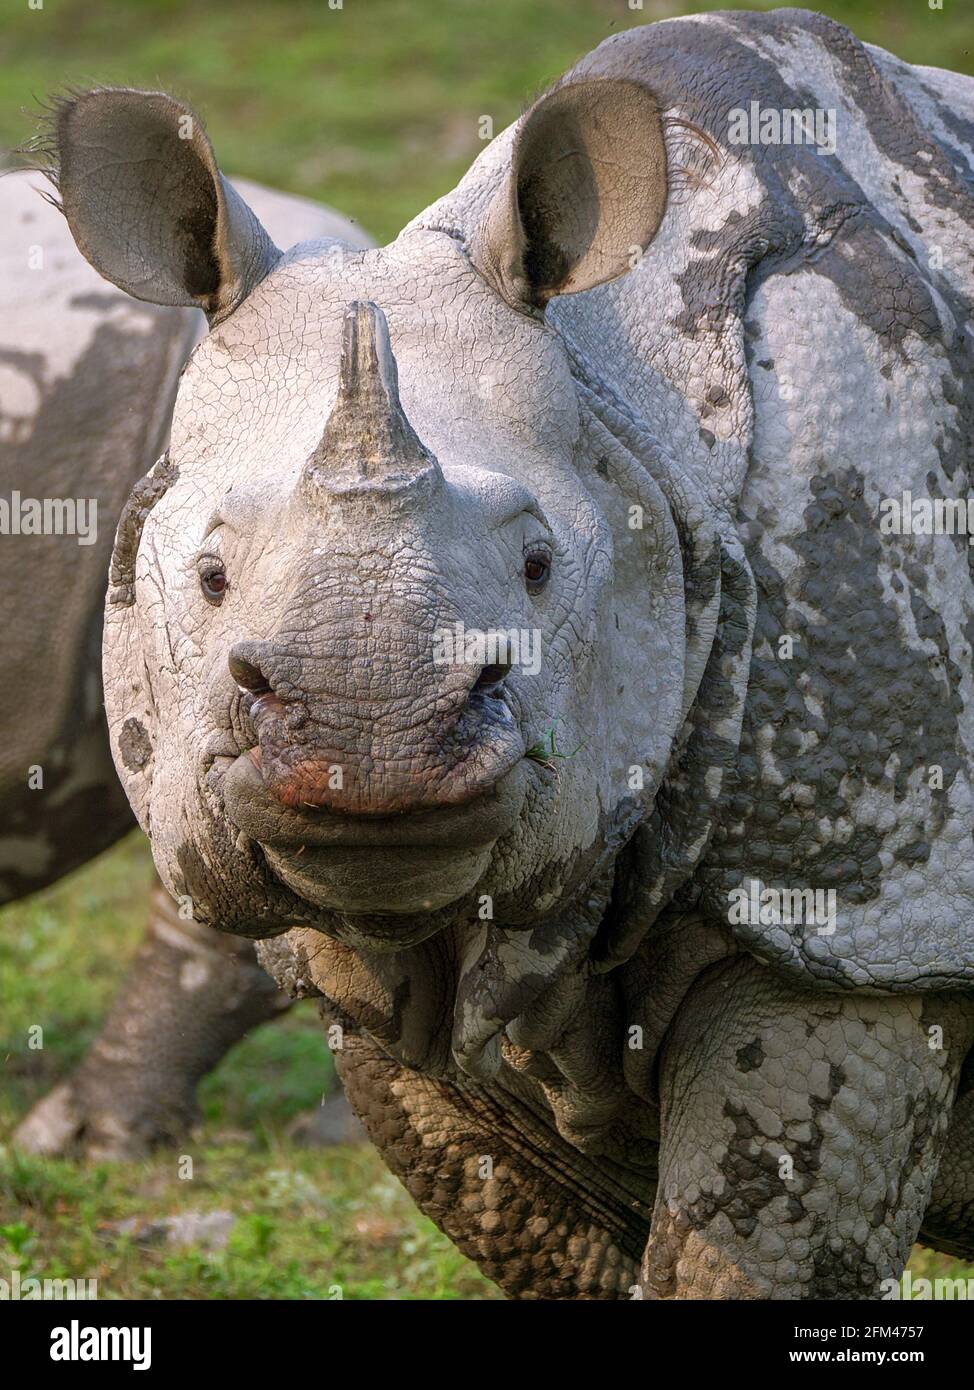 Les rhinocéros indiens - les rhinocéros unicornis, les rhinocéros indiens, les rhinocéros à cornes plus grands ou les grands rhinocéros indiens au parc national de Kaziranga Banque D'Images